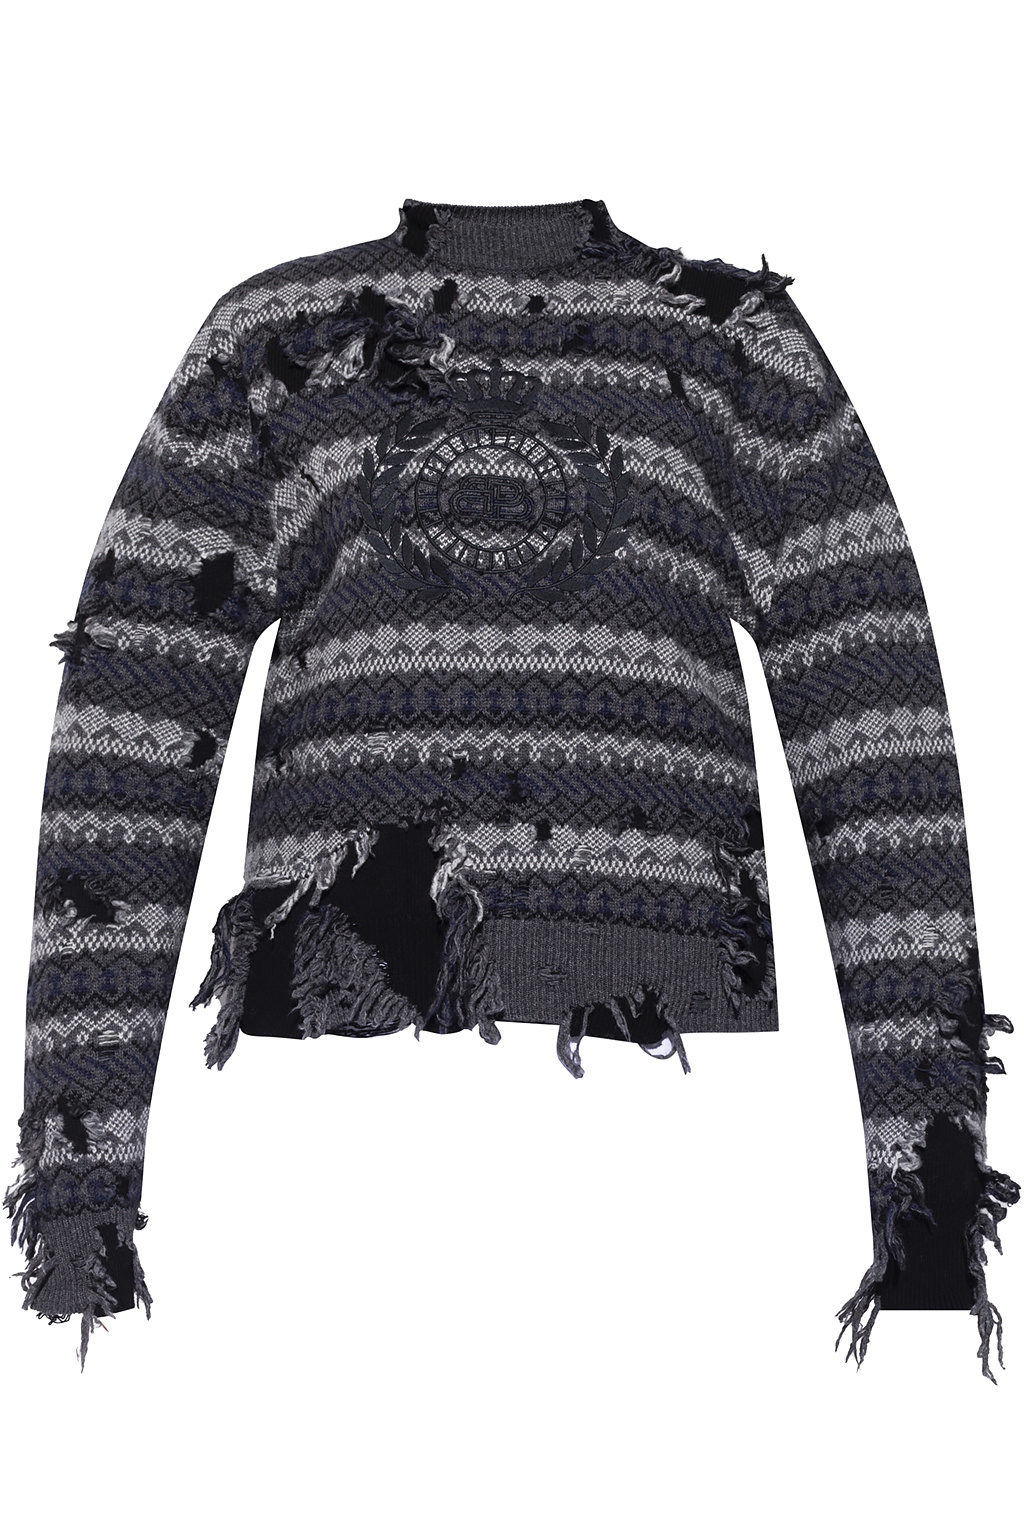 Balenciaga Patterned sweater | Women's Clothing | IetpShops